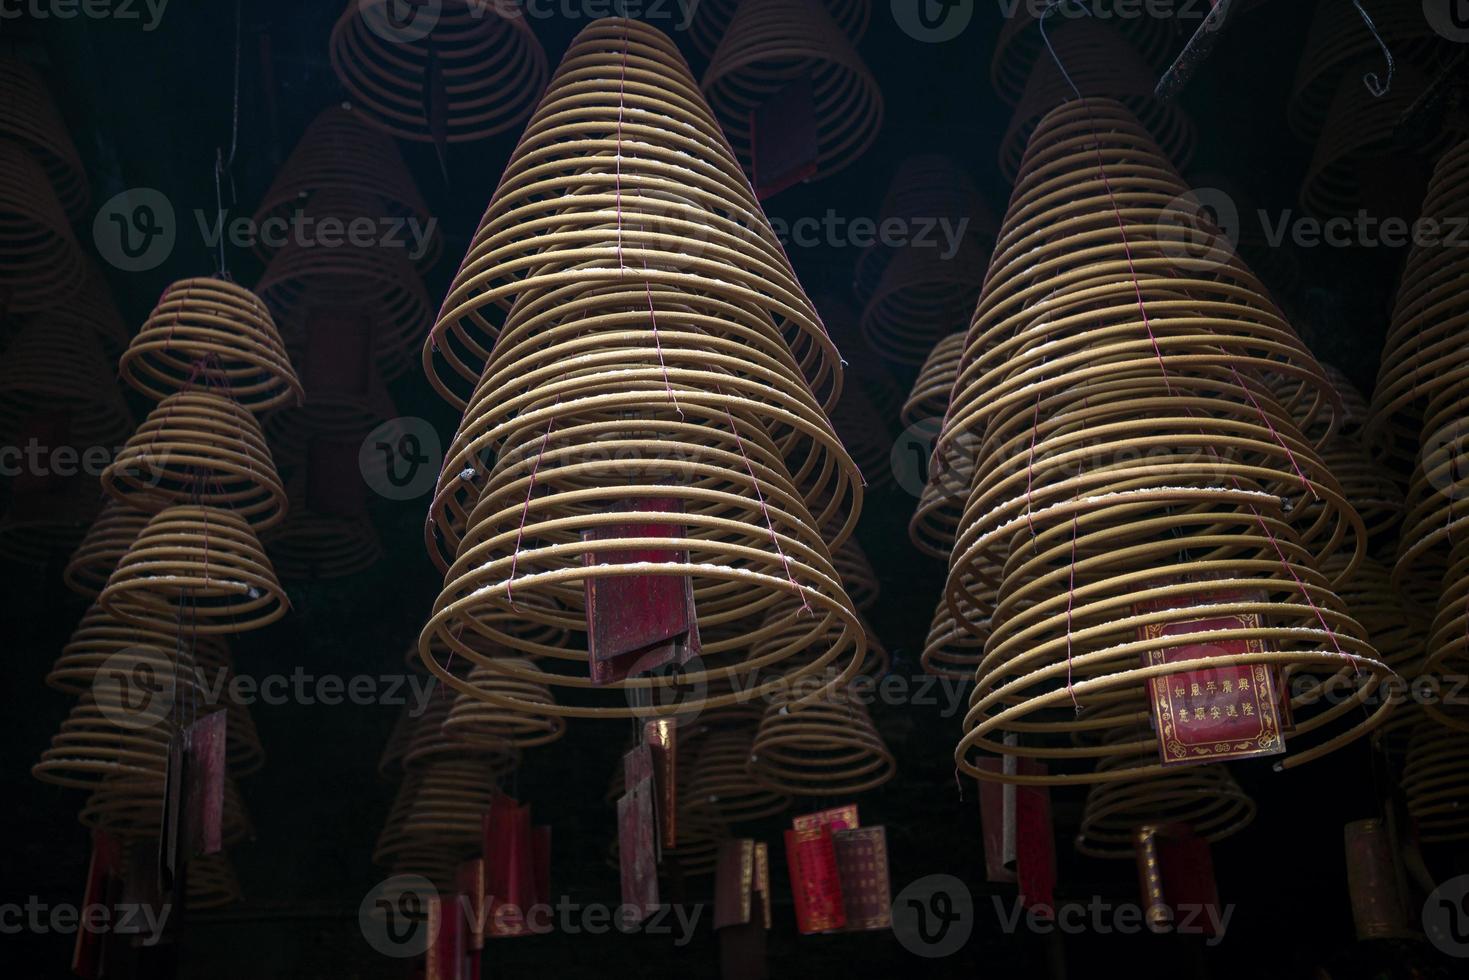 traditionella brinnande rökelspolar inuti det kinesiska a-ma buddhistiska templet i macau Kina foto